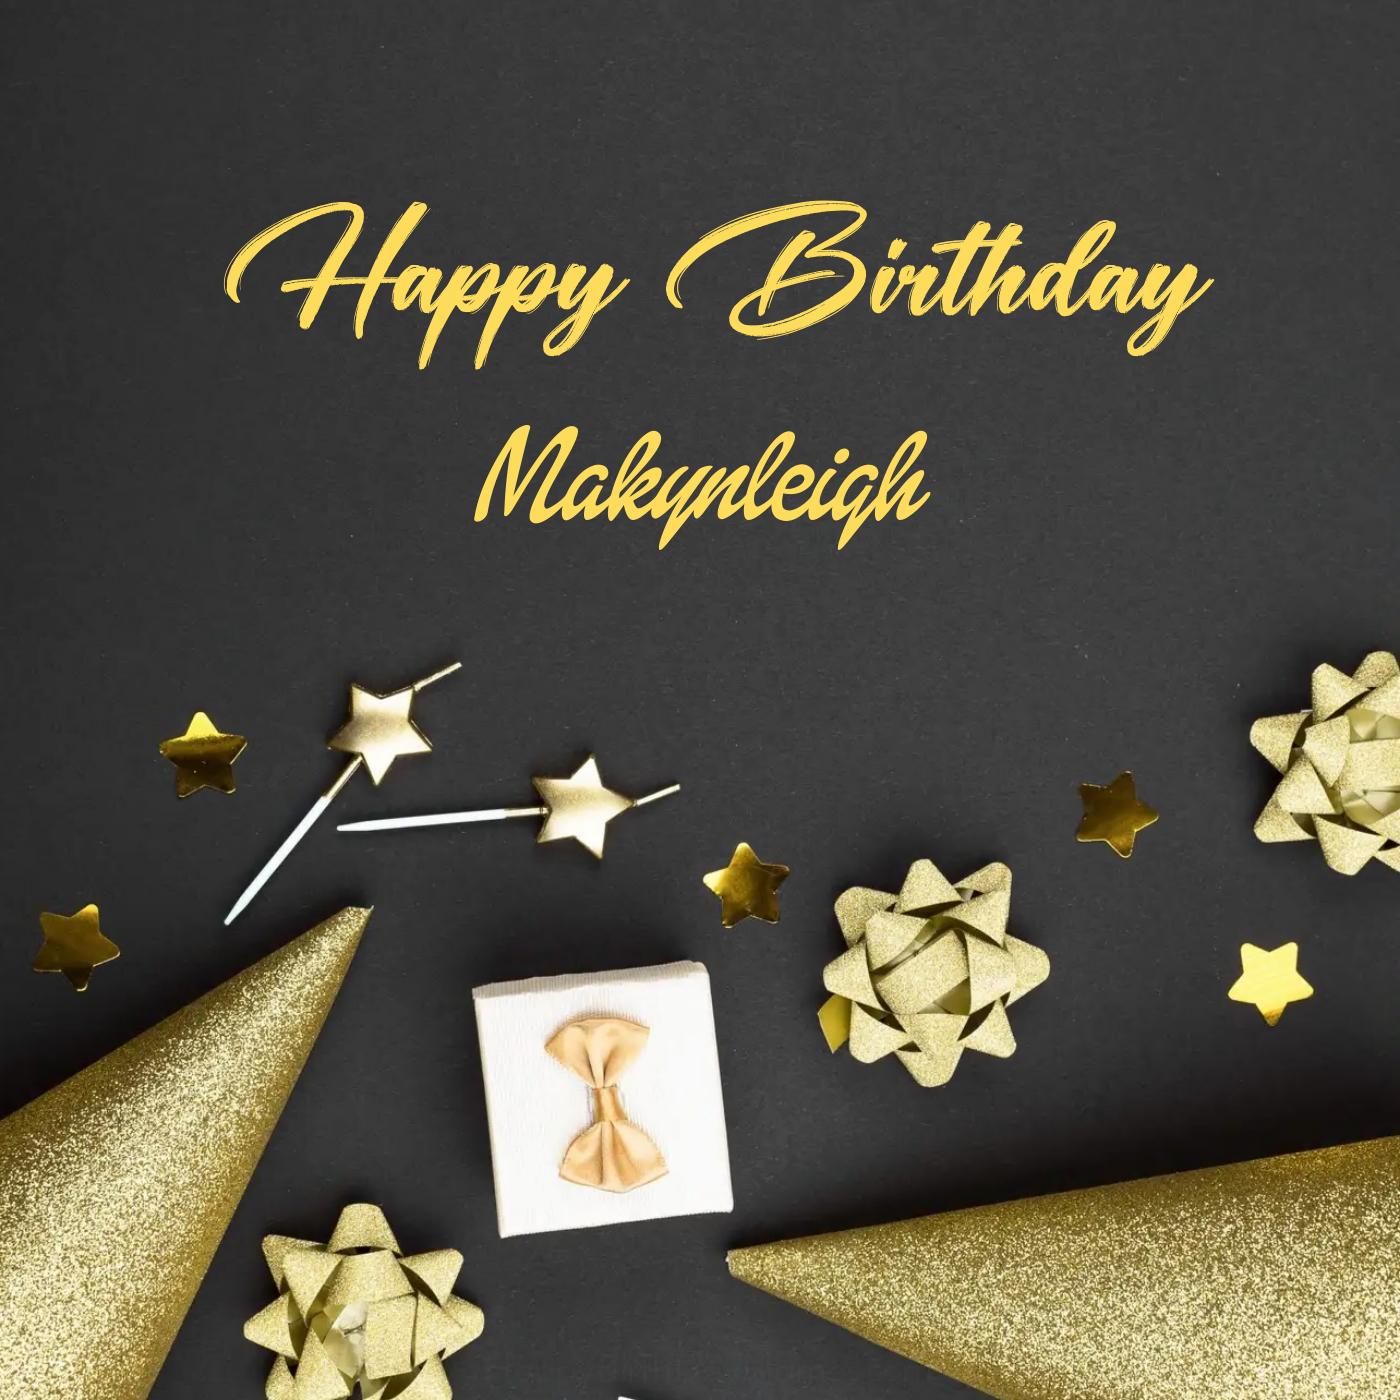 Happy Birthday Makynleigh Golden Theme Card